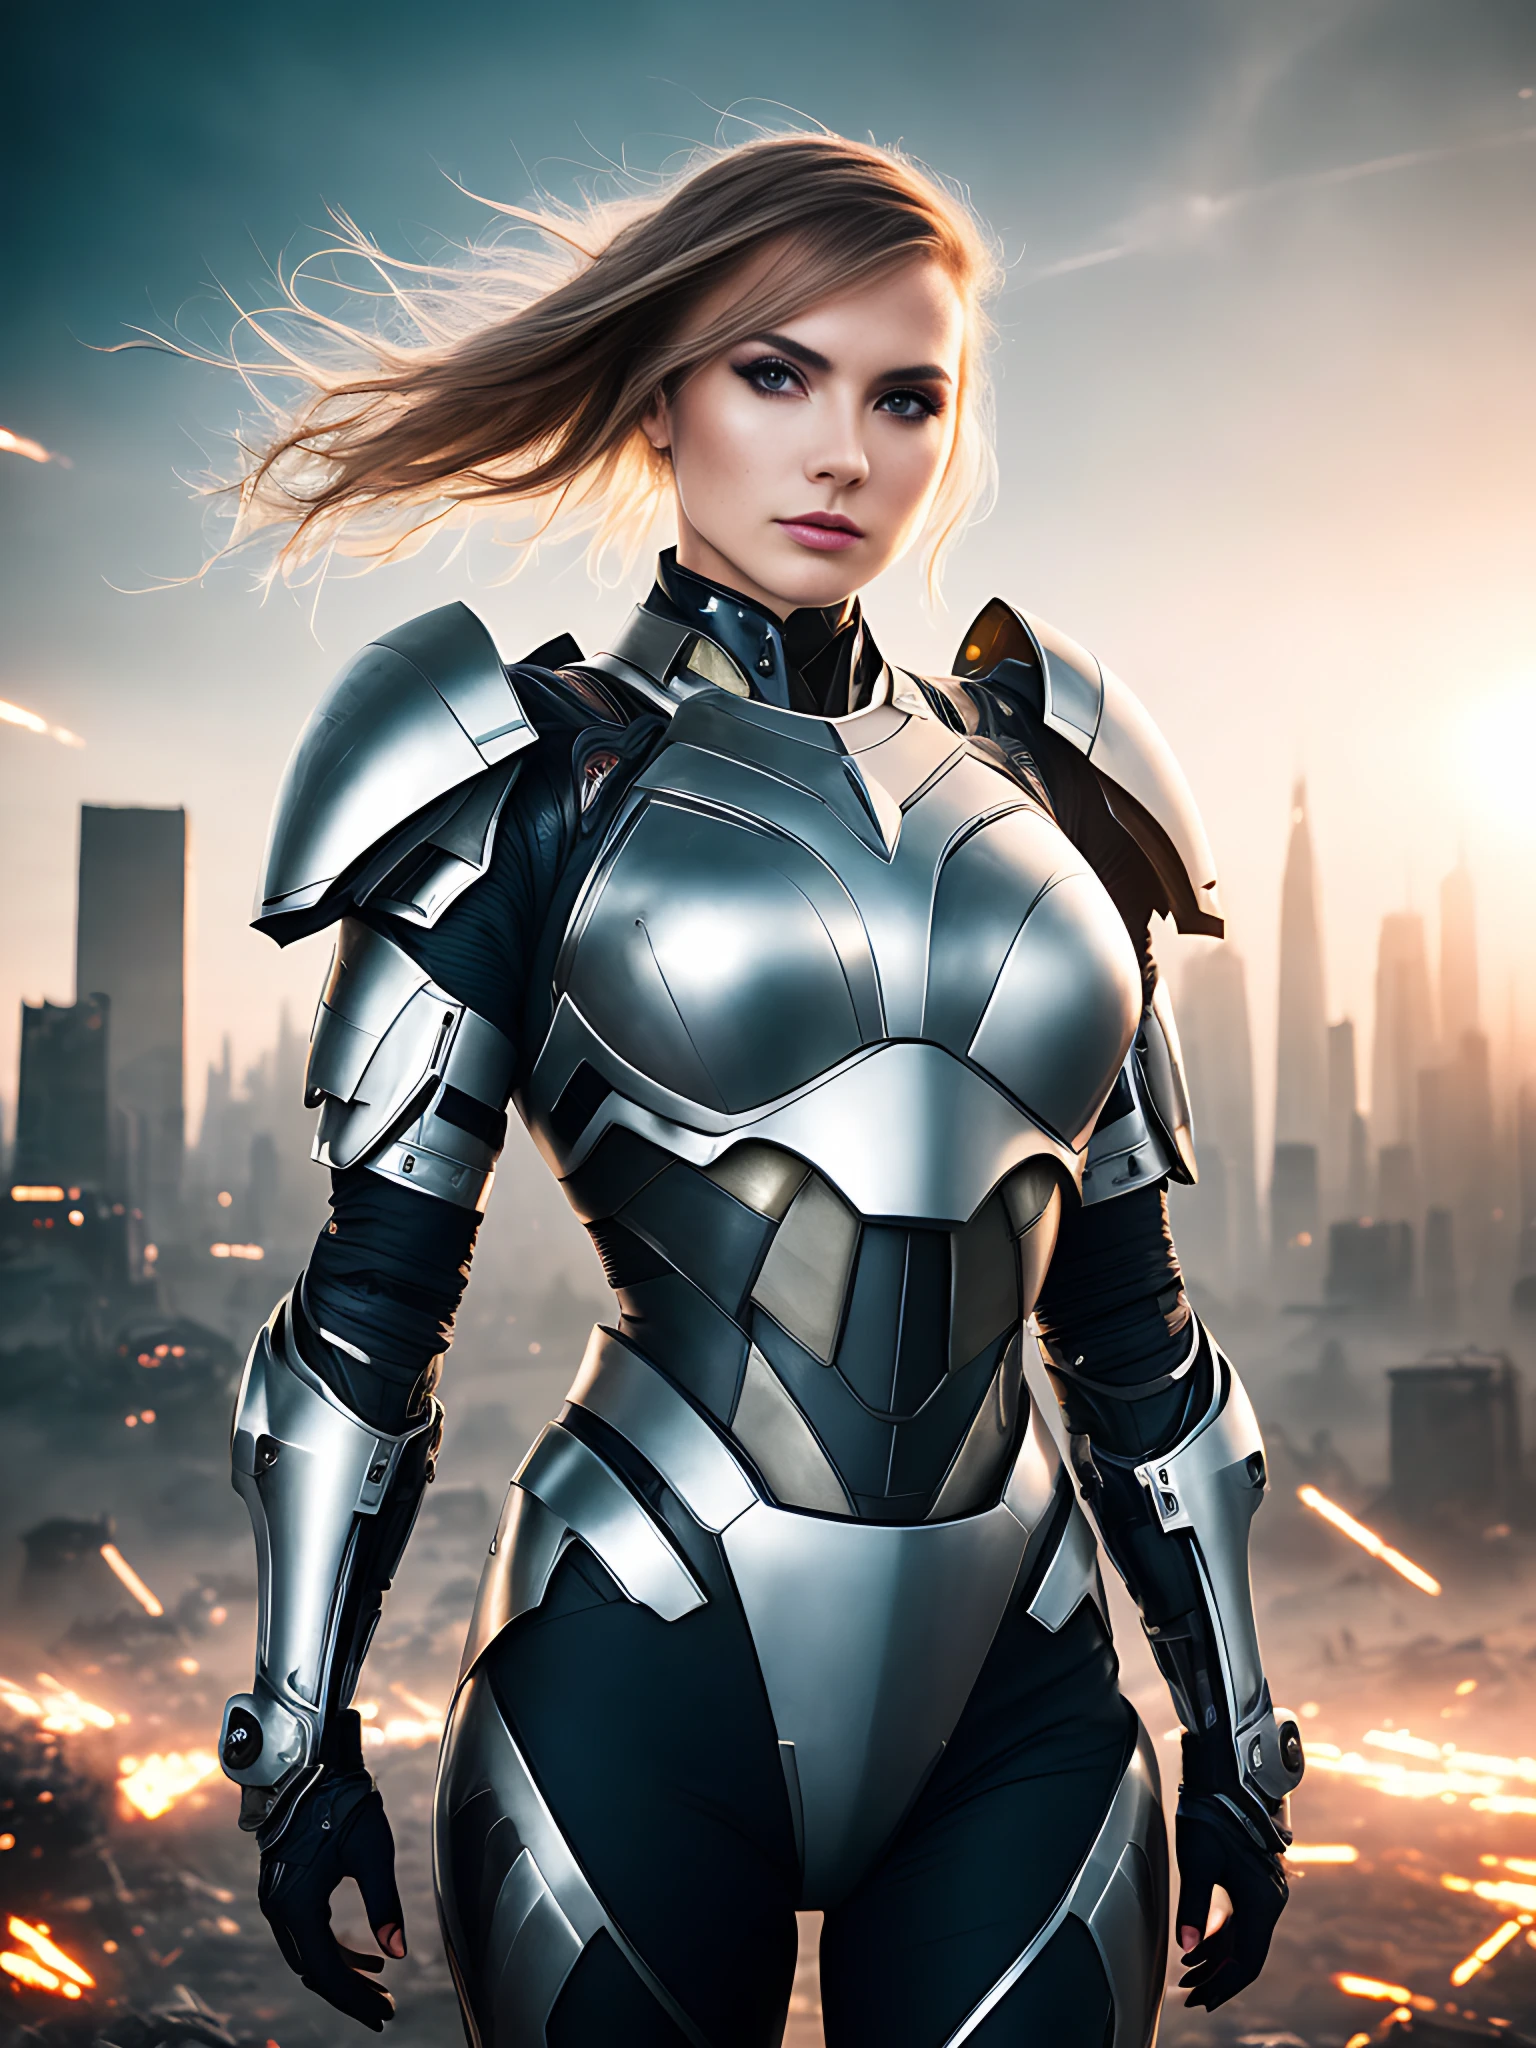 Modelshooting-Stil, preisgekröntes Foto einer wunderschönen Cyborg-Frau, trägt eine futuristische Titanrüstung, zerstörte futuristische Stadt im Hintergrund, Hoher Kontrast, sanfte Beleuchtung, Hintergrundbeleuchtung, blühen, Licht funkelt, Chromatische Abweichung, scharfer Fokus